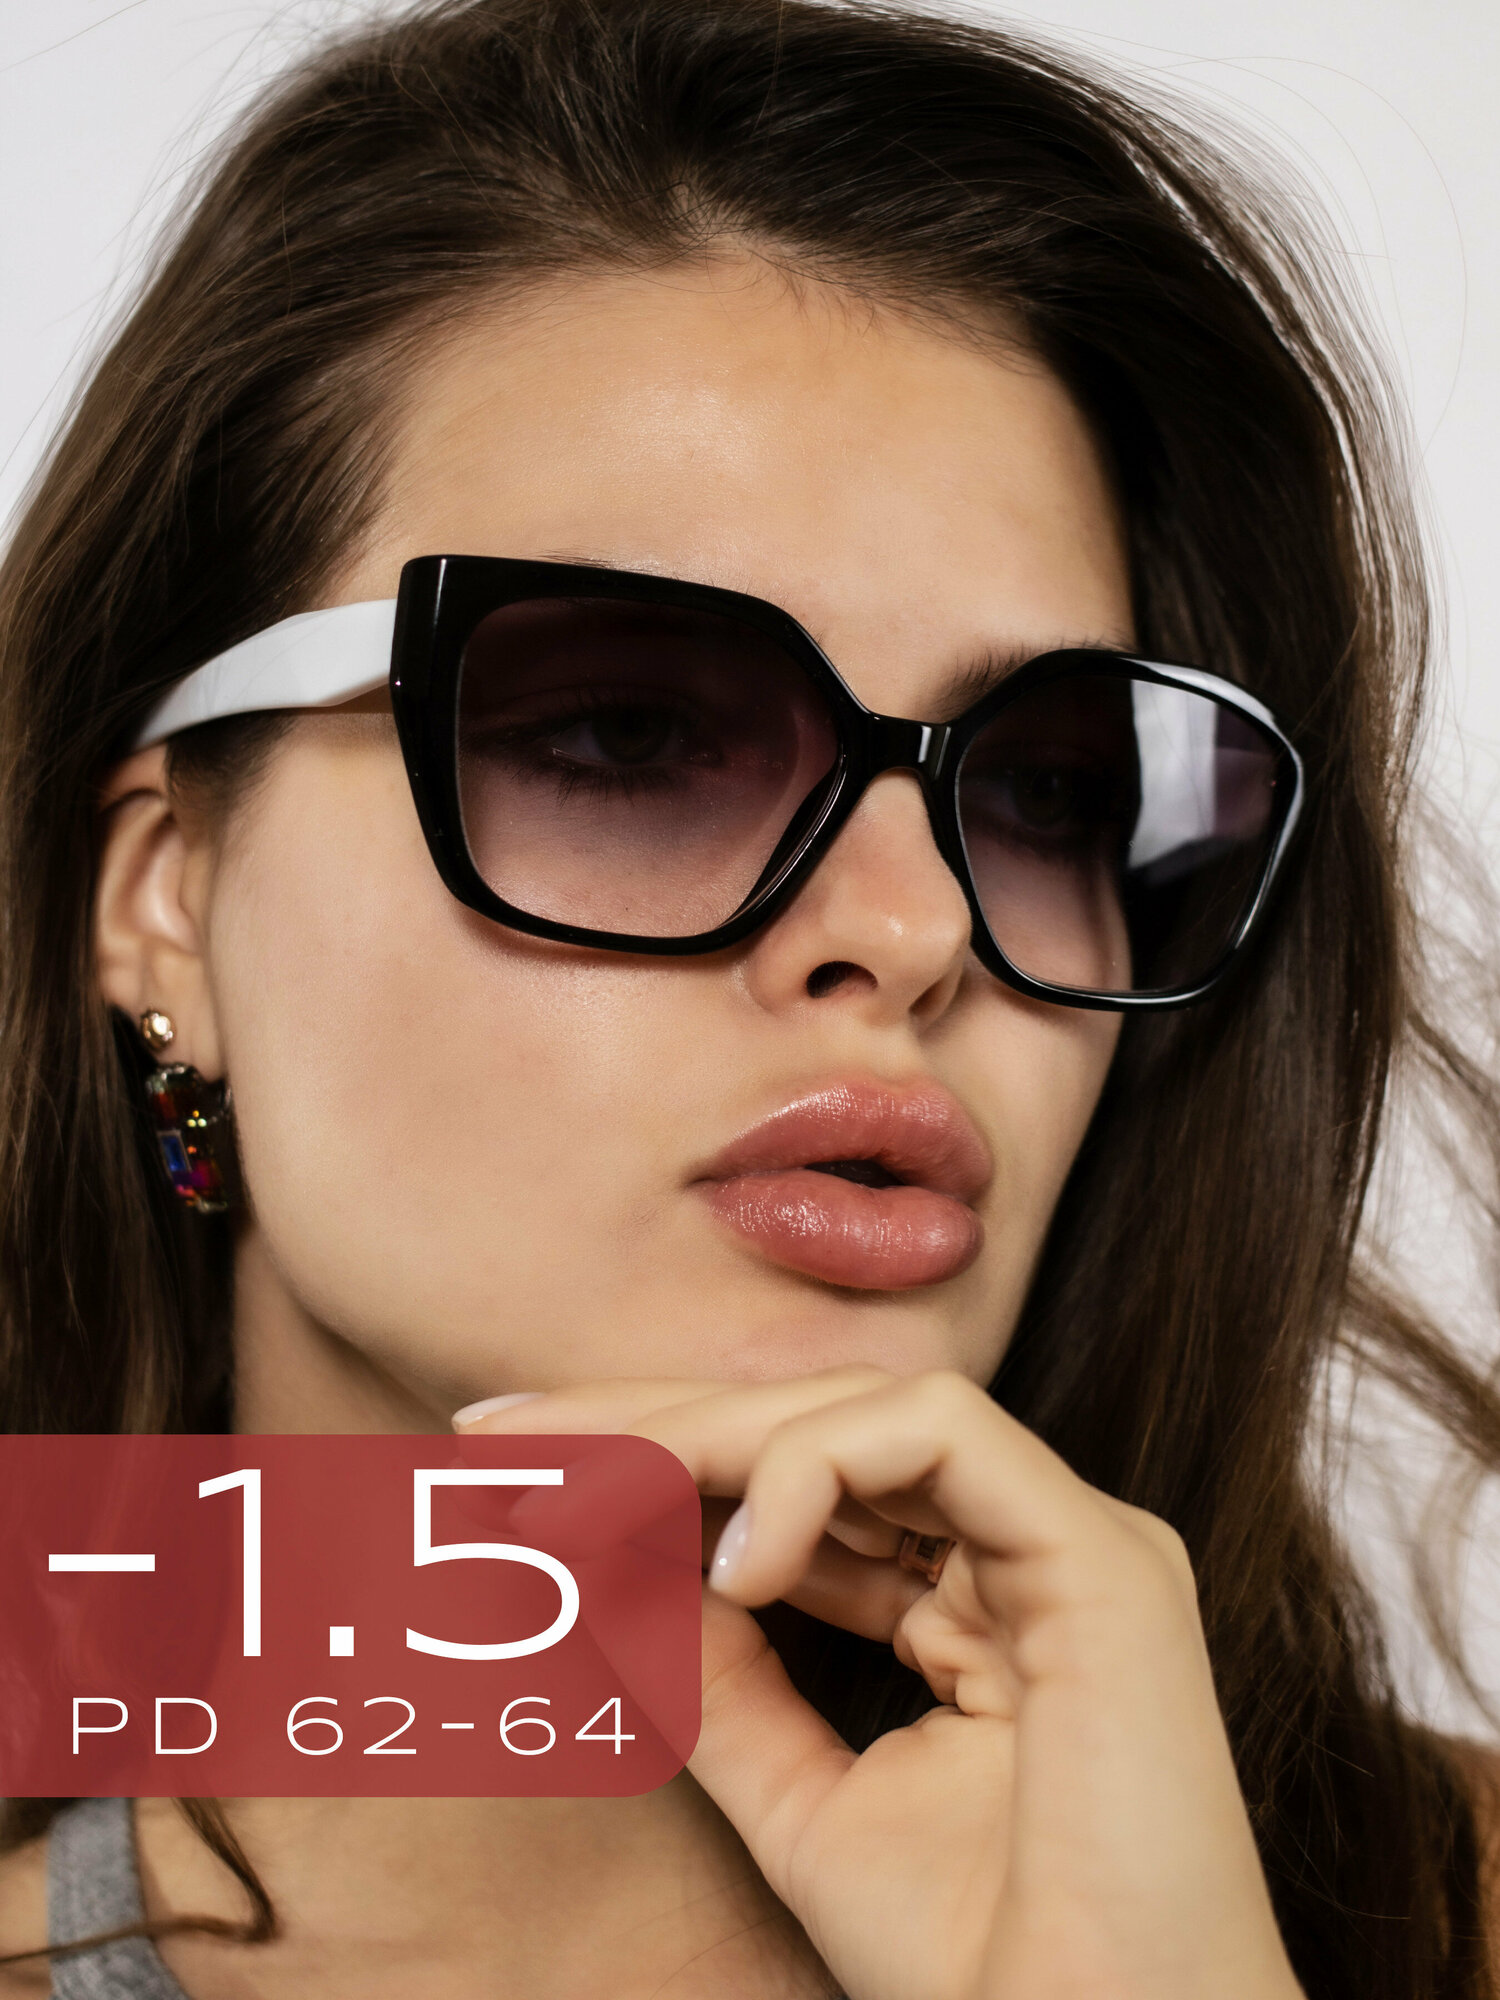 Очки для зрения женские -1,5 Готовые очки с тонированными линзами и диоптрией -1.50